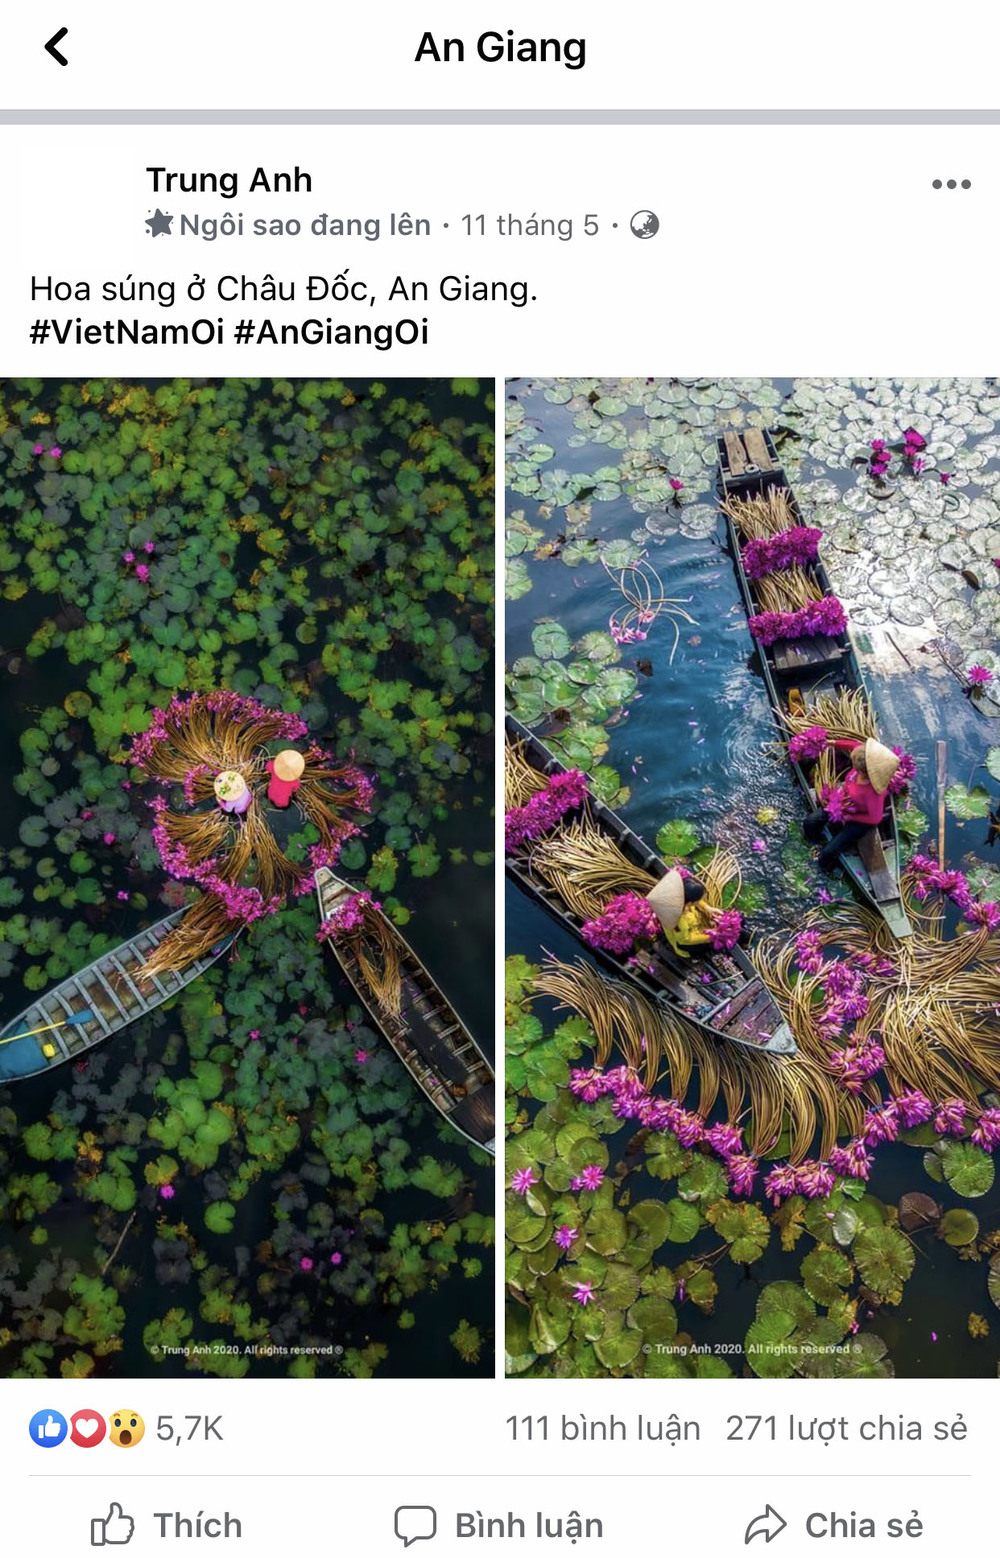  
Cái tên An Giang trong cộng đồng Việt Nam Ơi luôn khiến người ta phải xao xuyến bởi vẻ đẹp thanh bình qua từng hình ảnh.